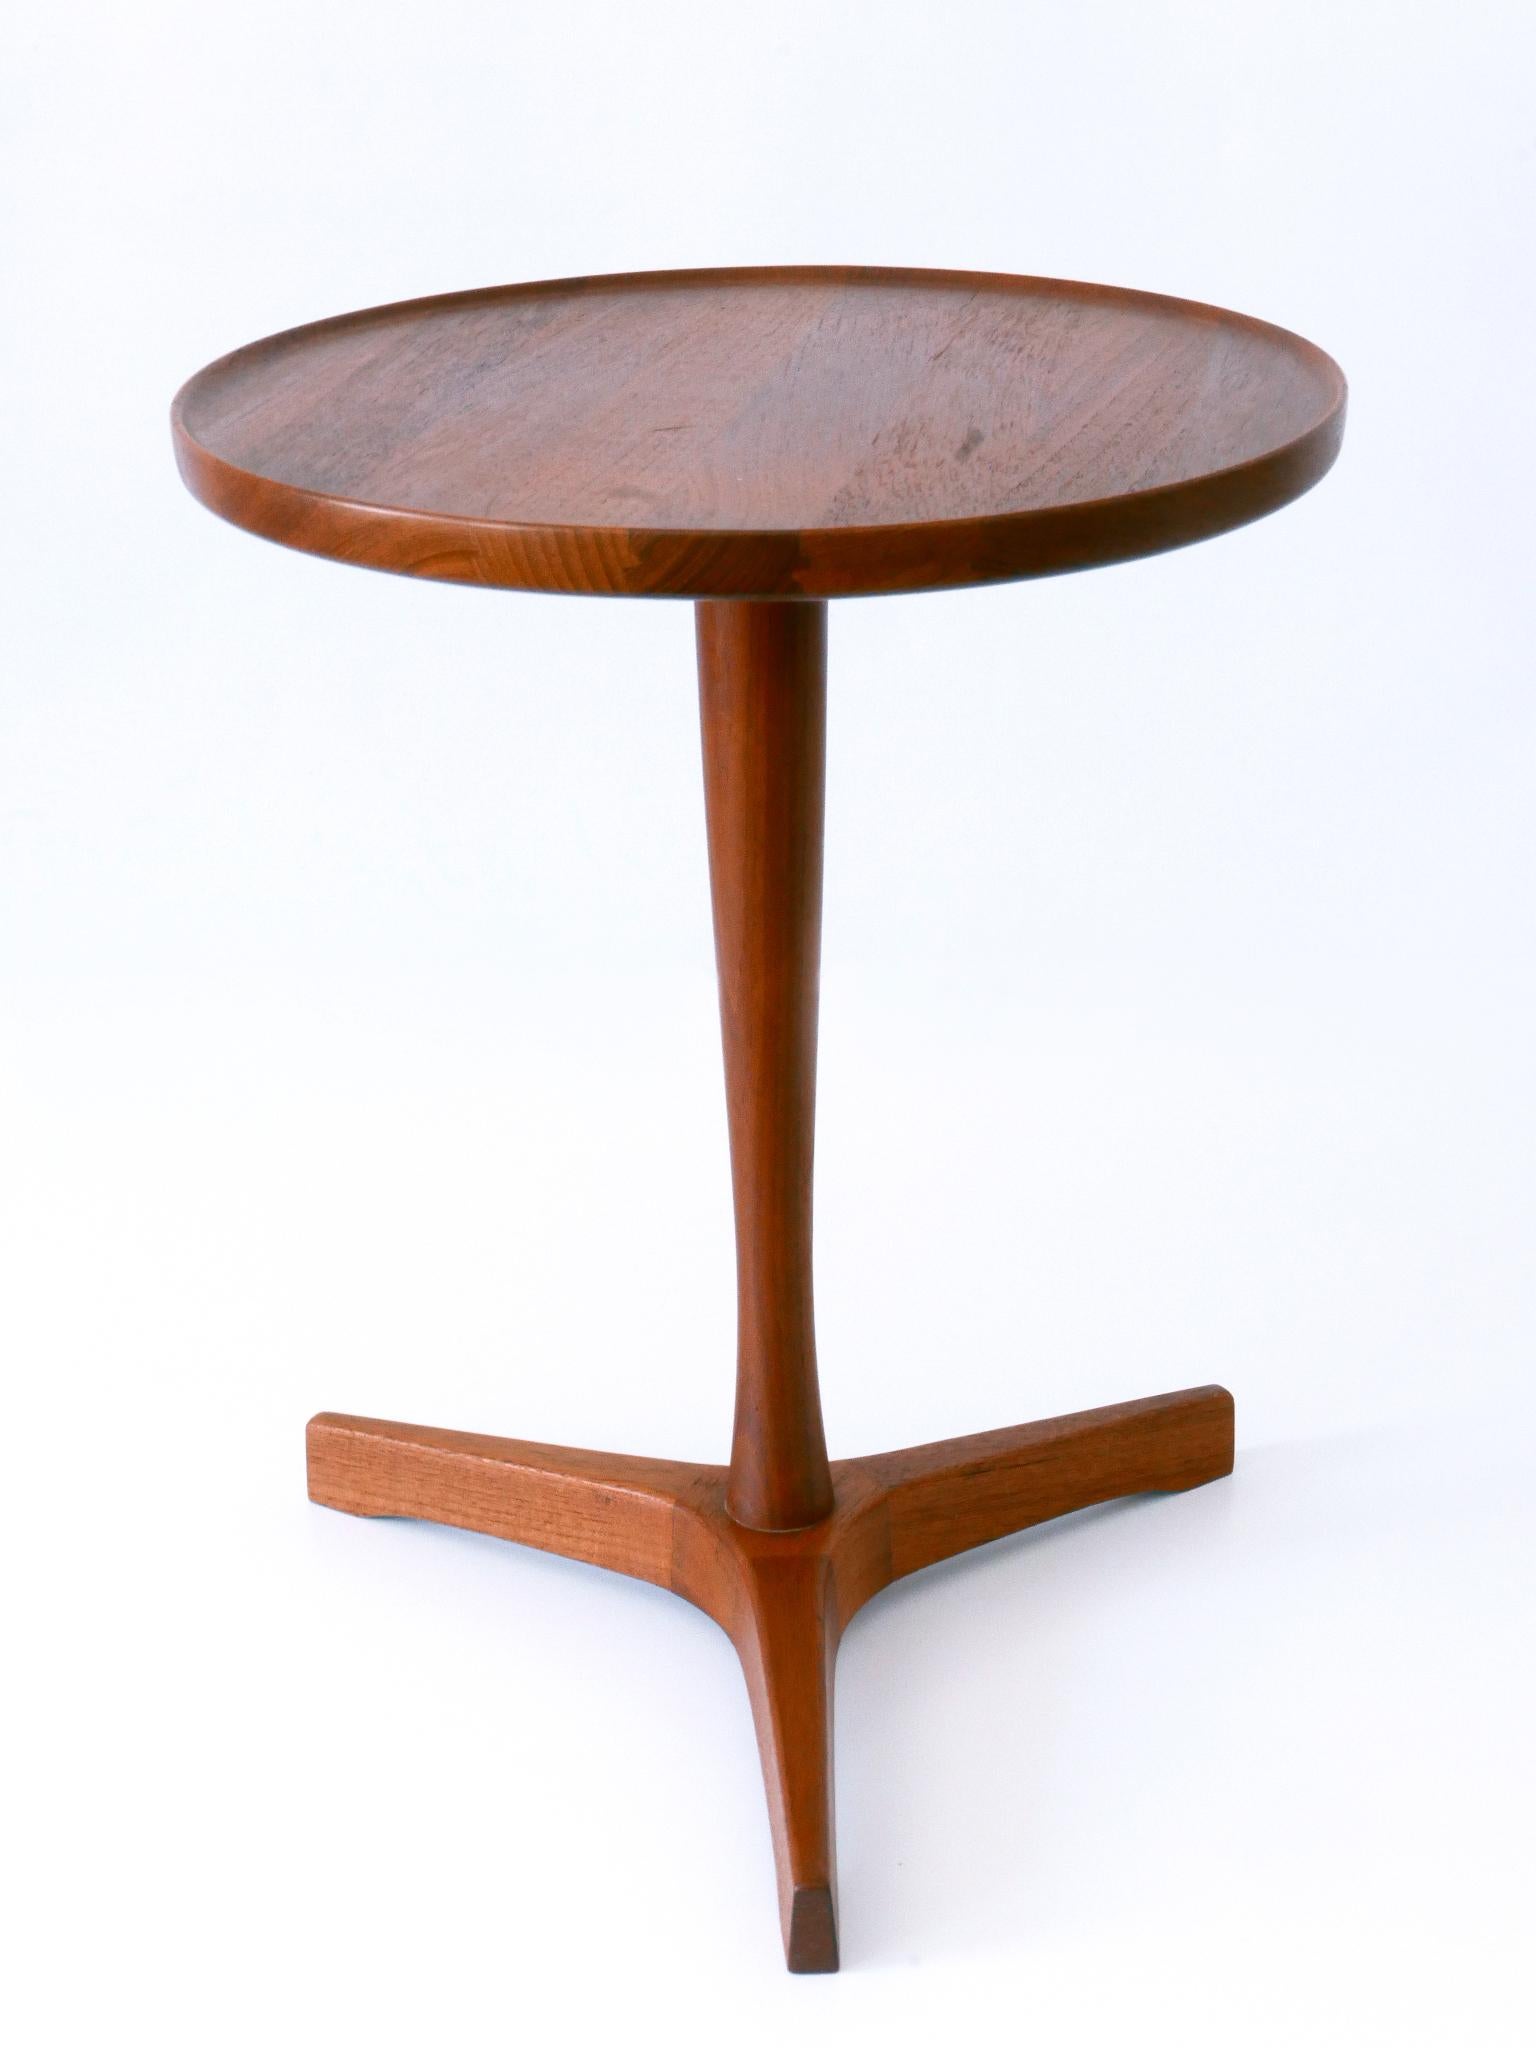 Danish Elegant Mid-Century Modern Teak Side Table by Hans C. Andersen for Artek 1960s For Sale